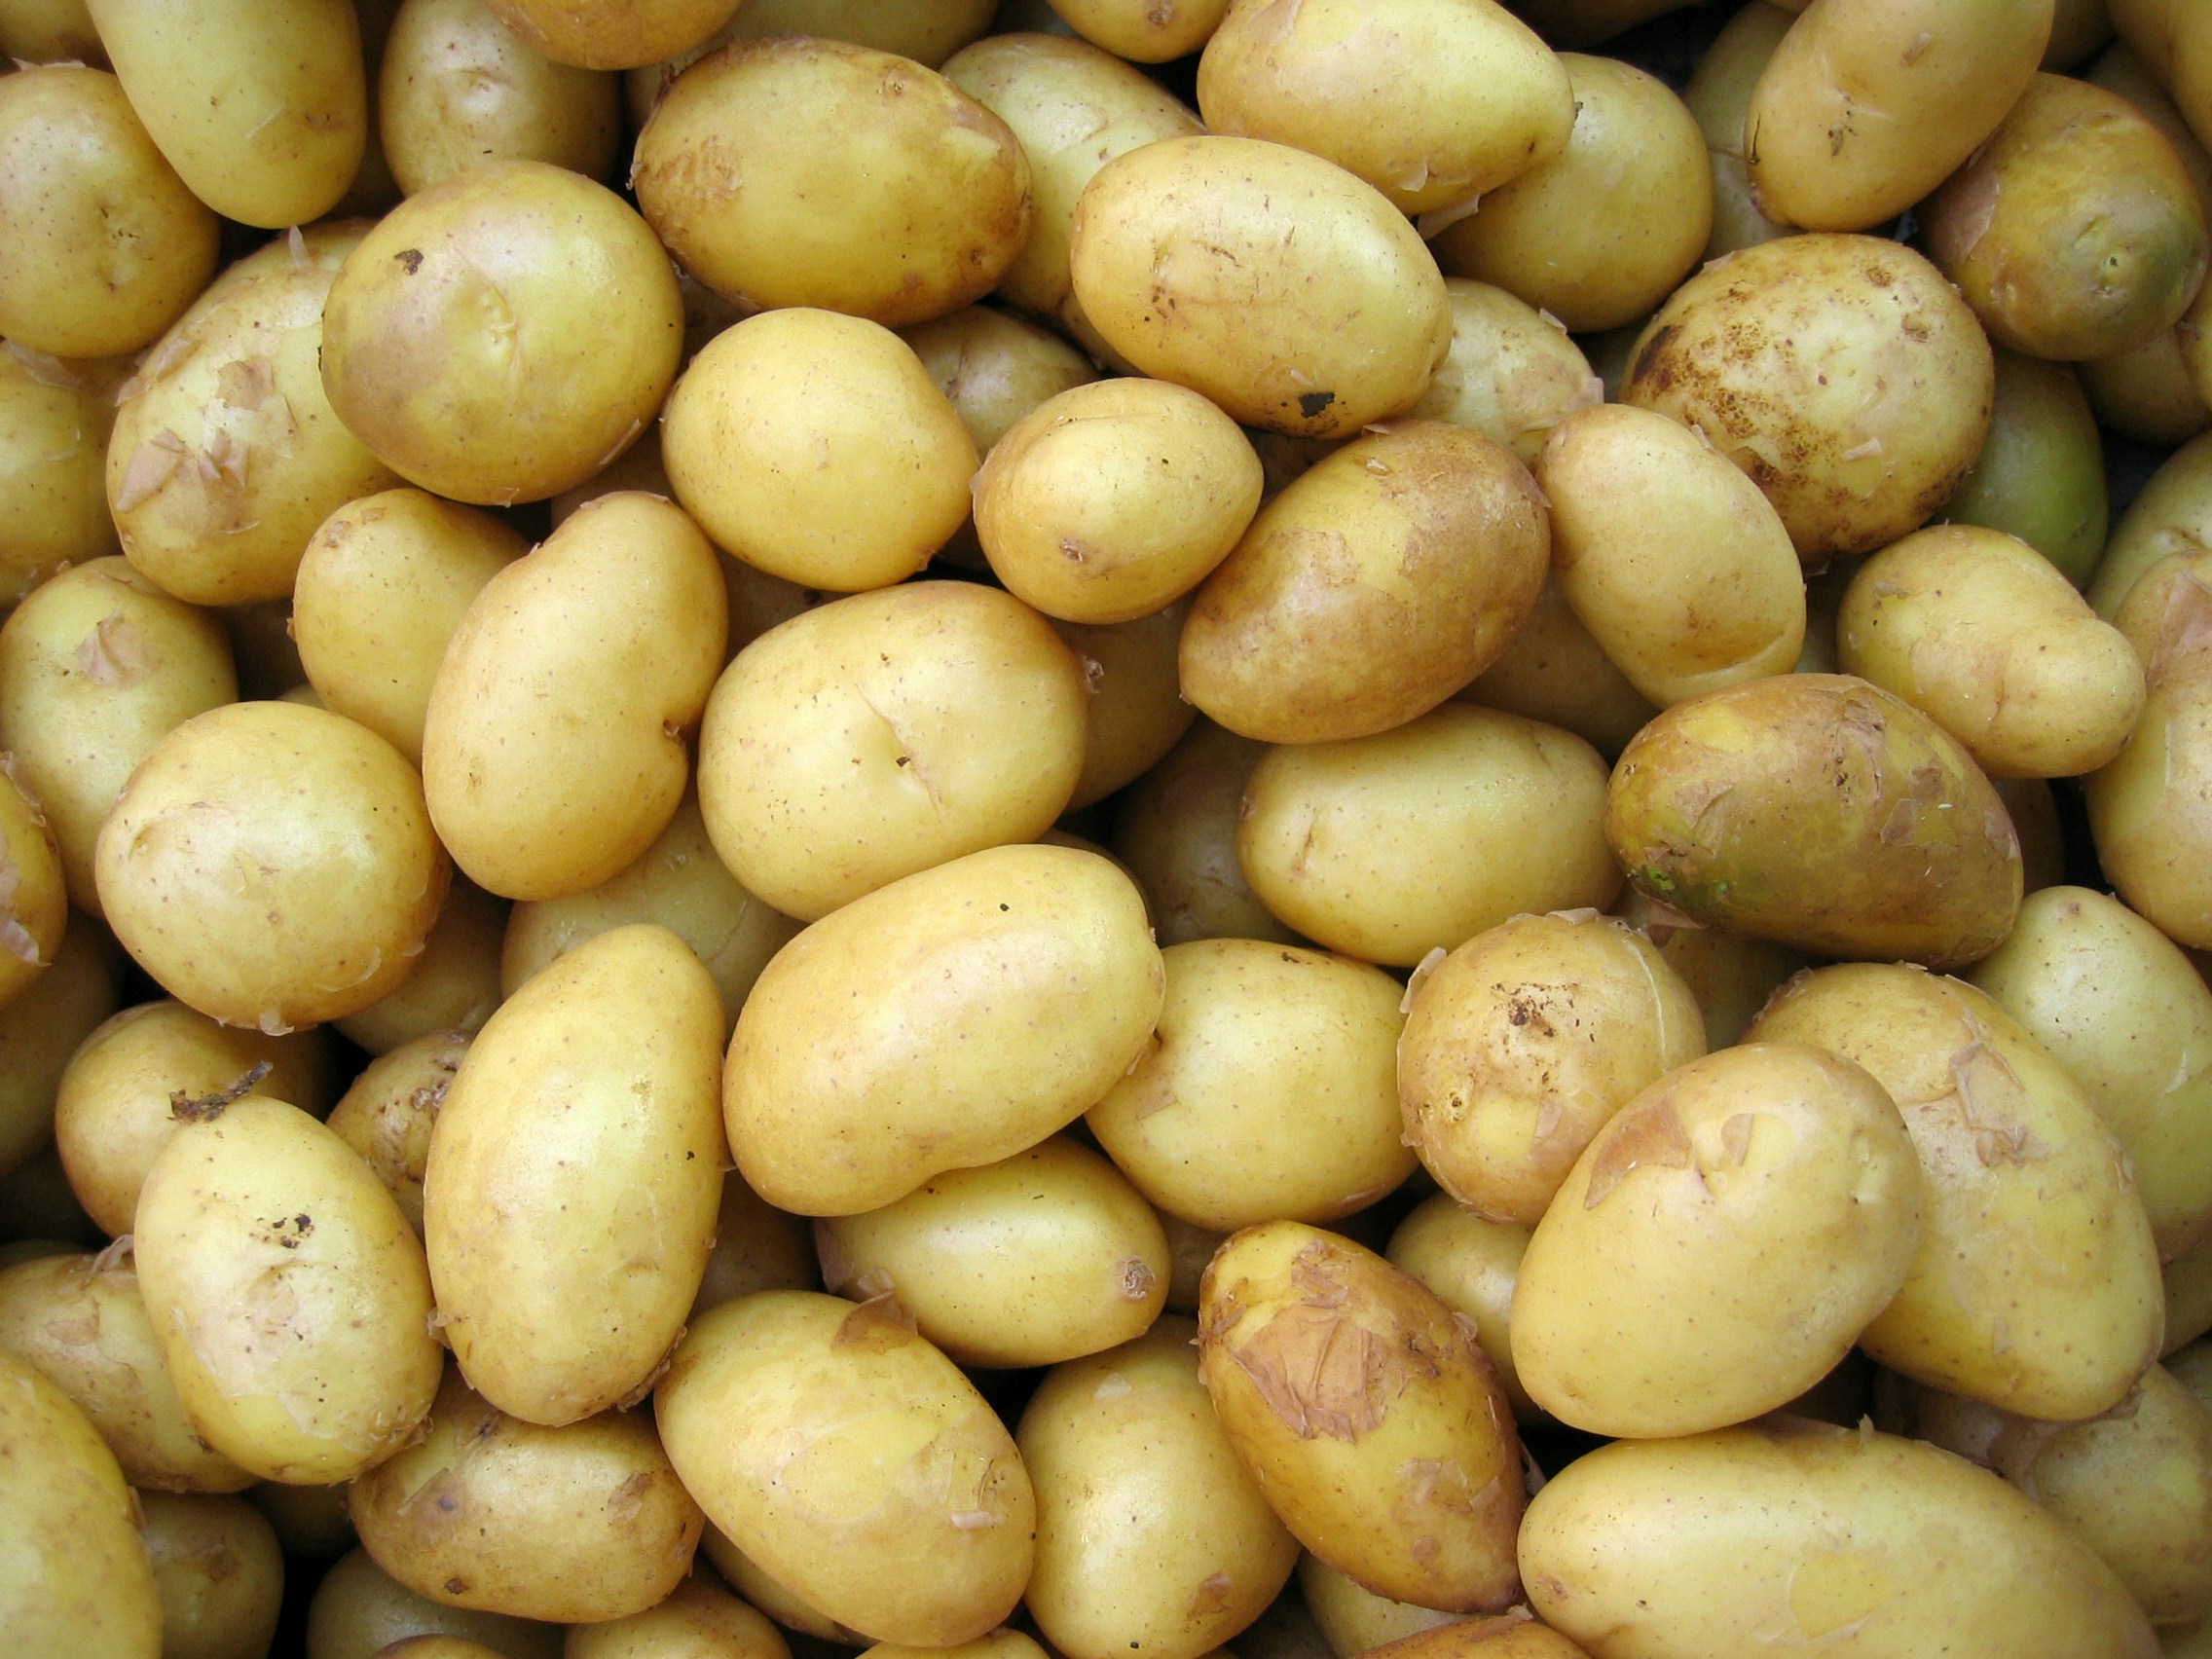 Potato Project